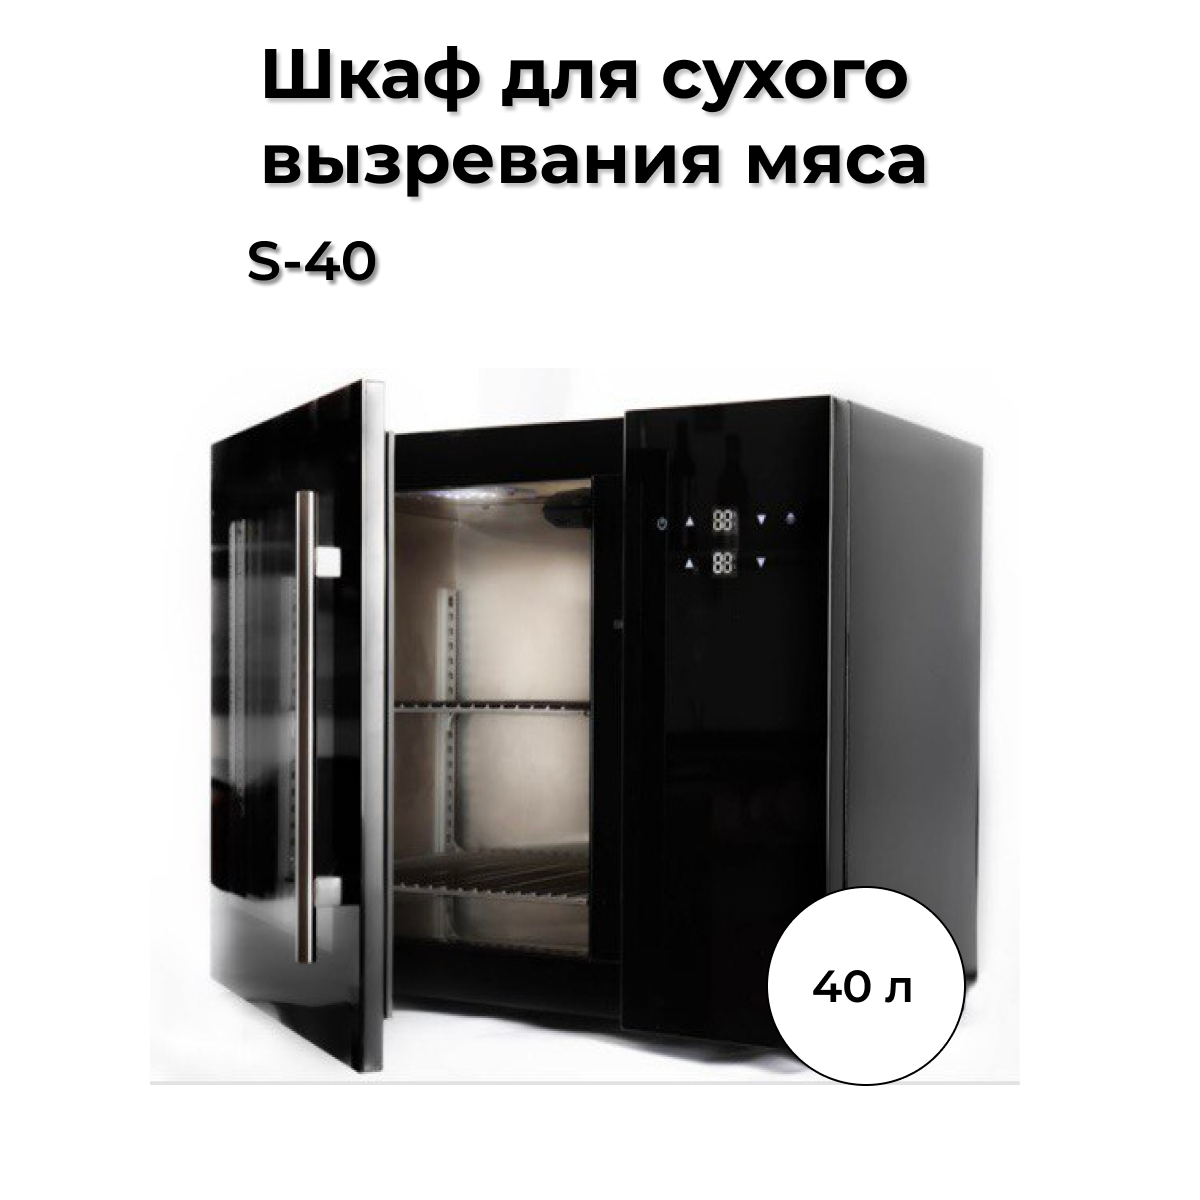 Холодильник Wistora S-40 черный